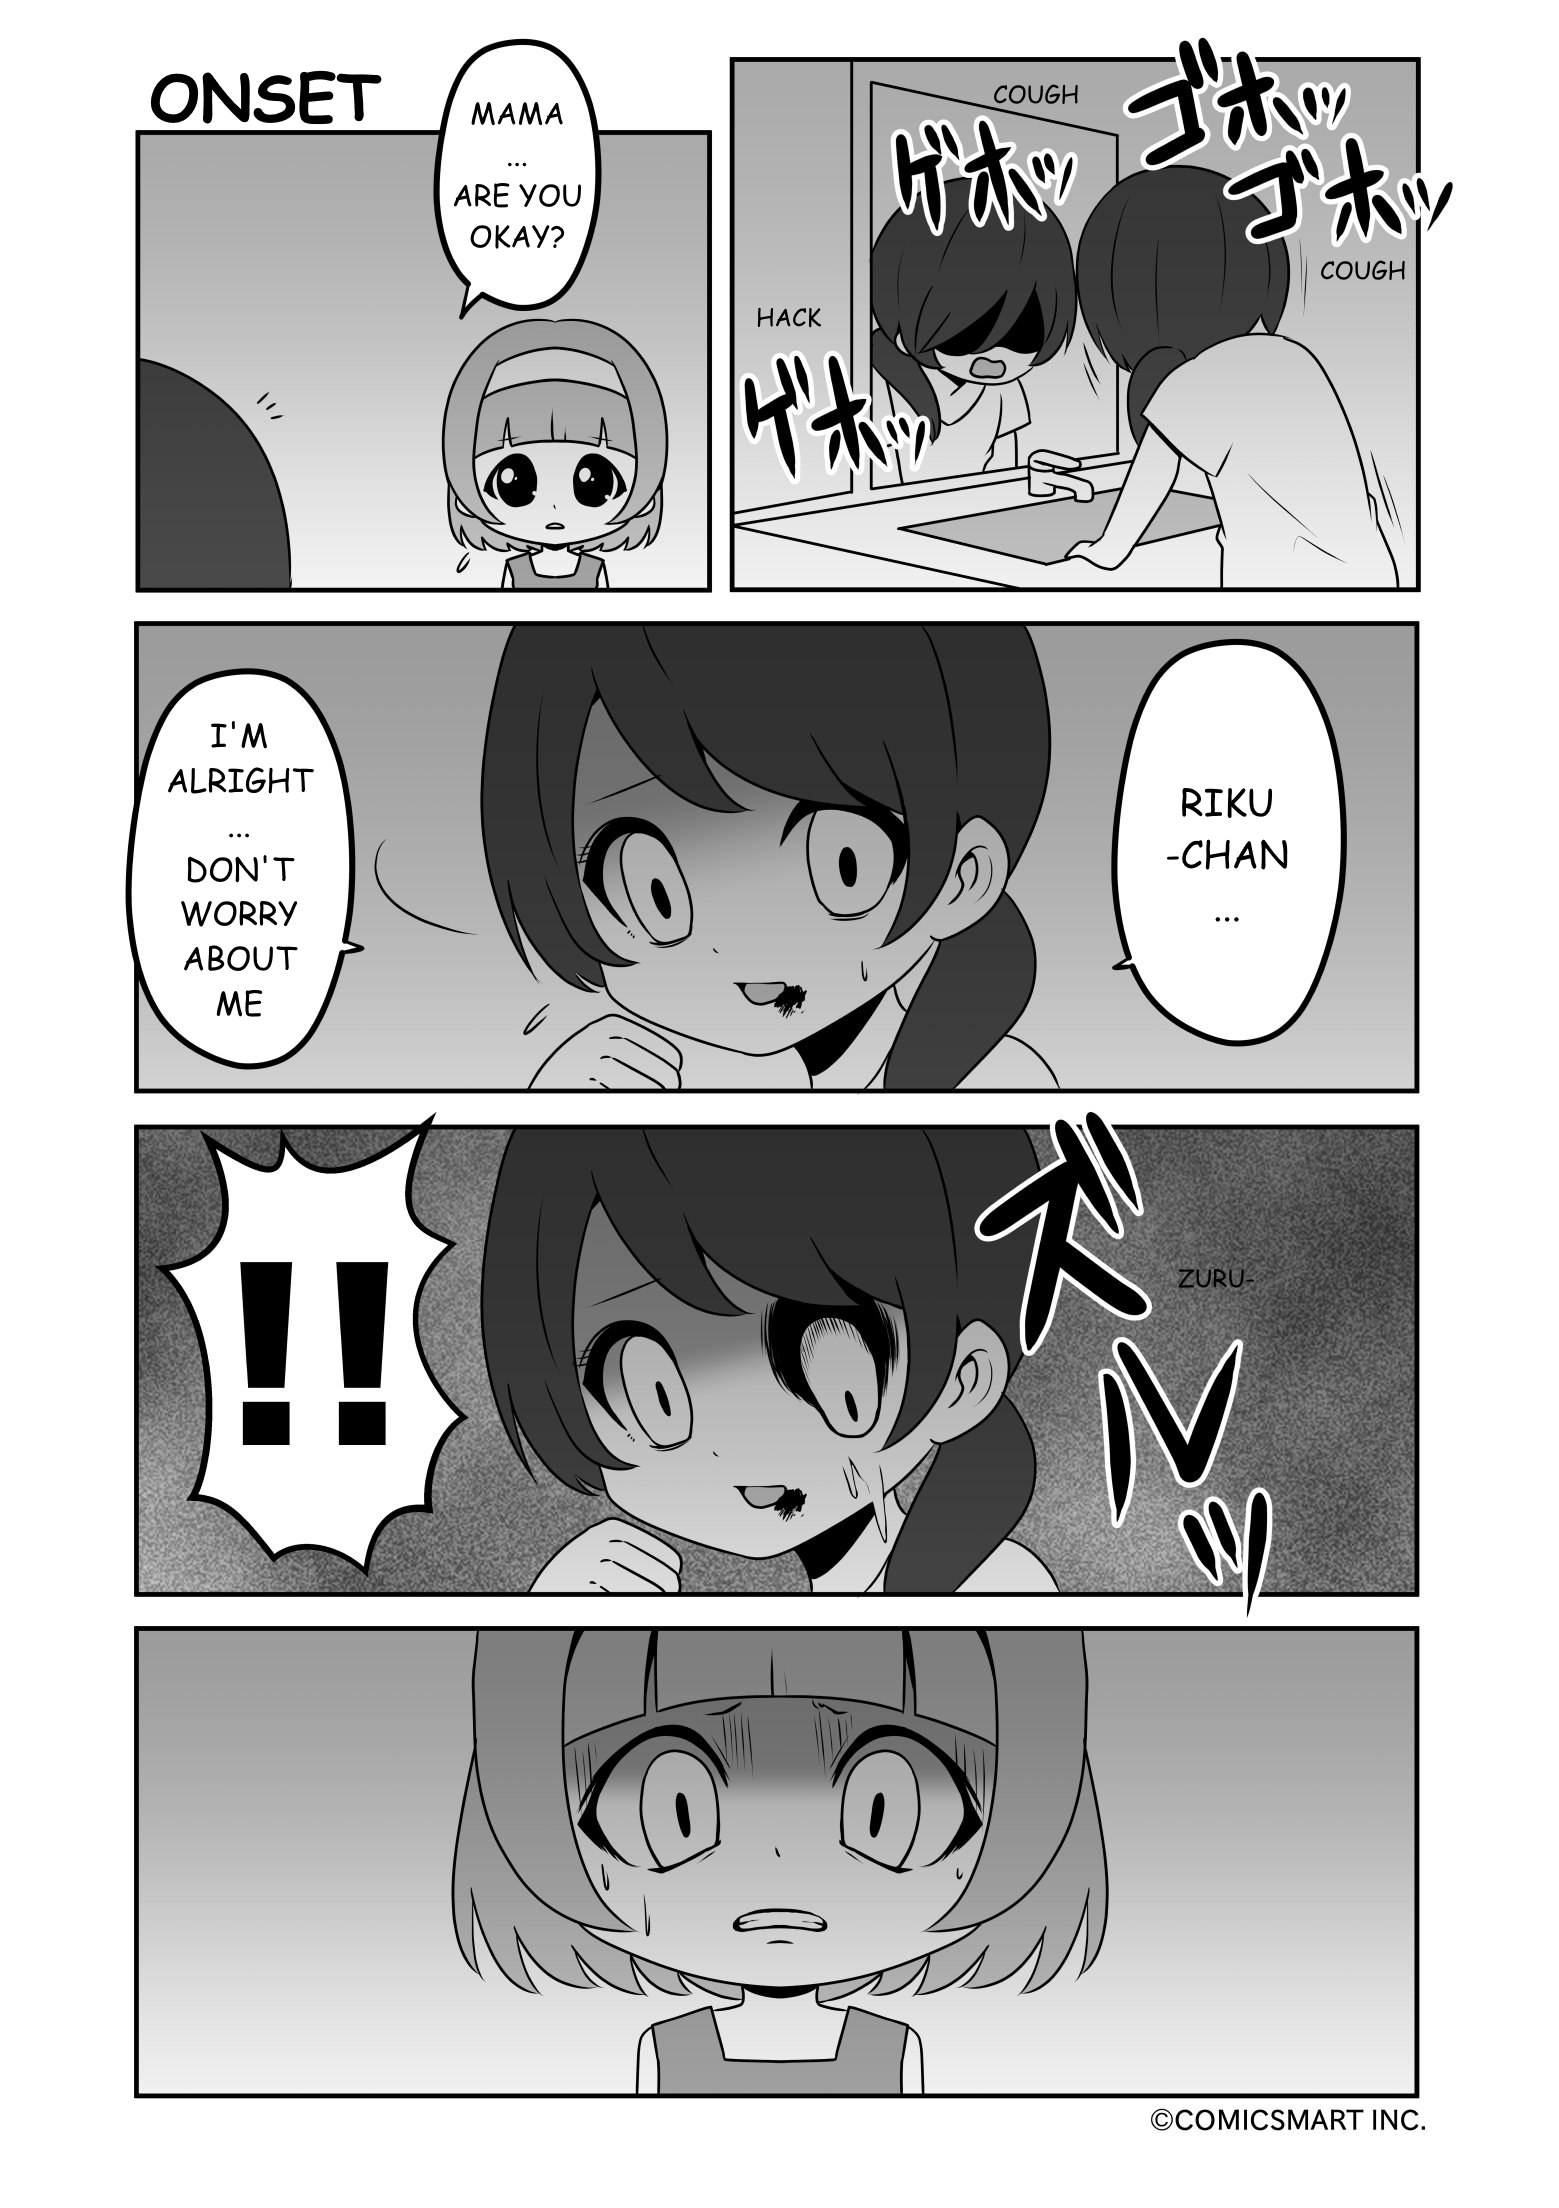 Zombie Girl Mukuro - Page 1